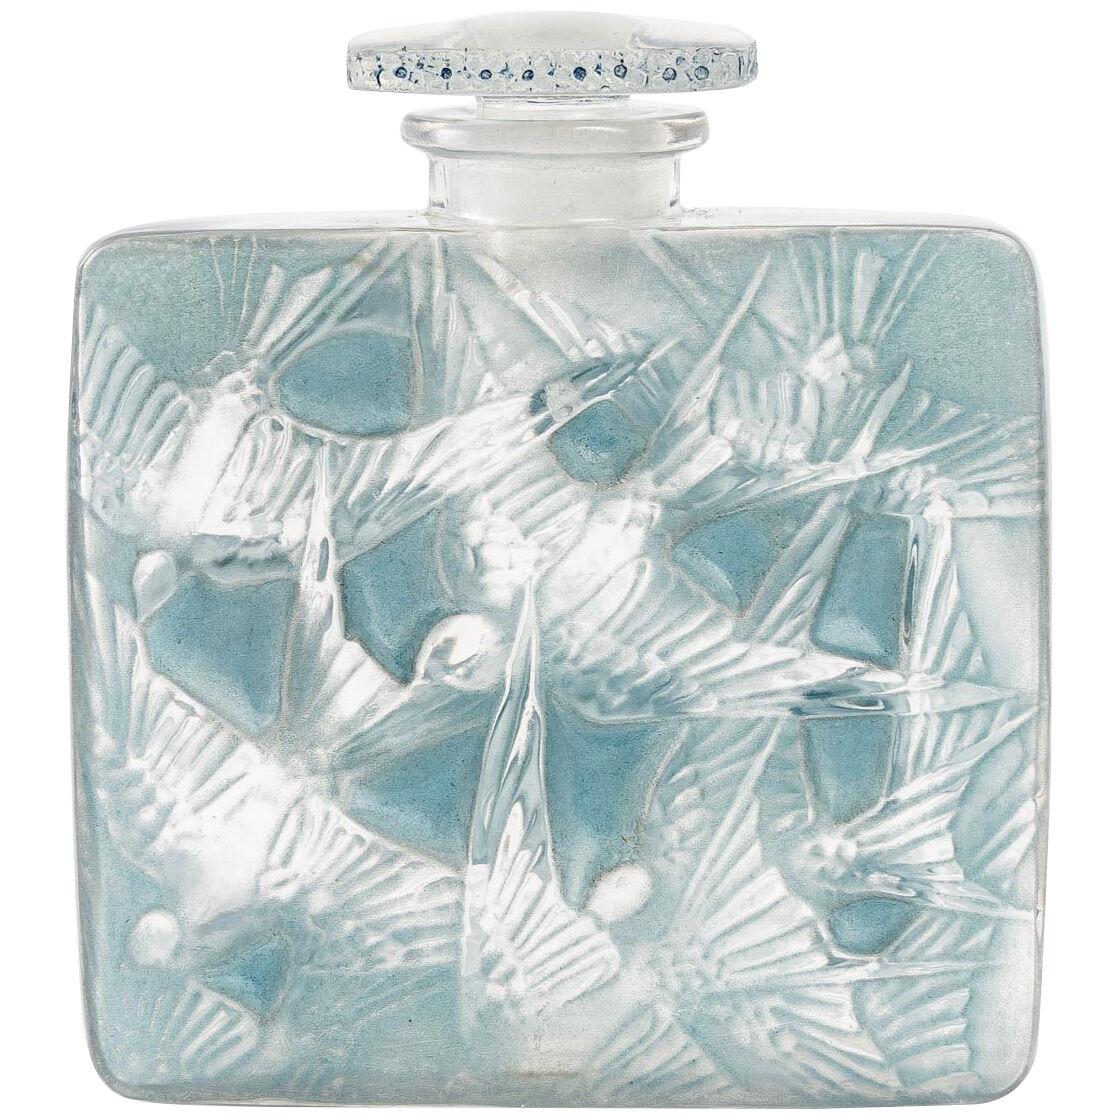 1920 René Lalique - Perfume Bottle Hirondelles Glass Blue Patina - Swallows